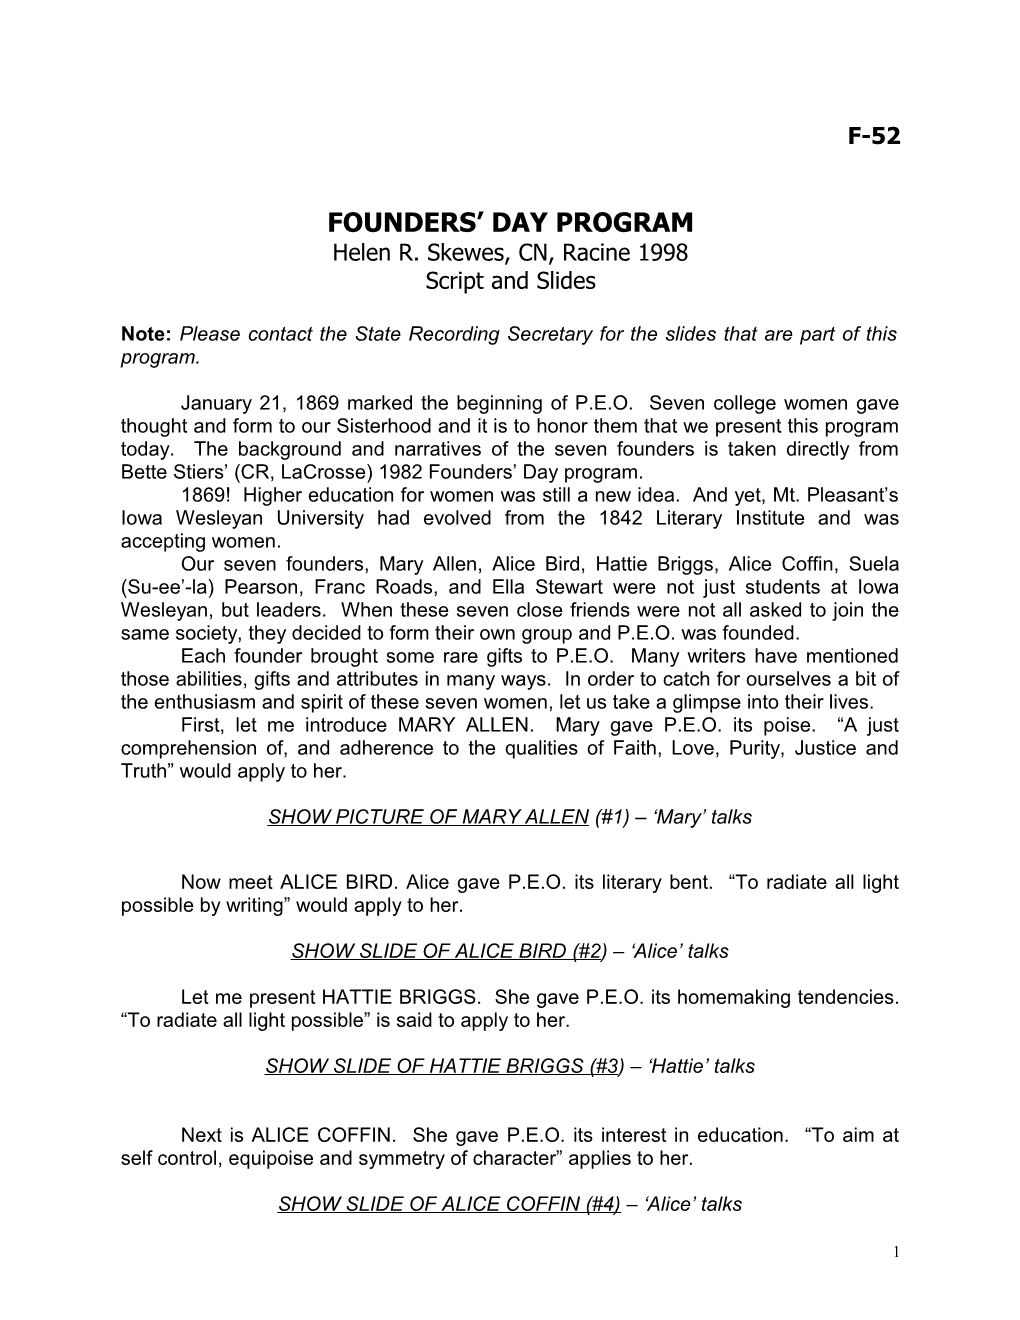 1998 Slide Founders Day Program